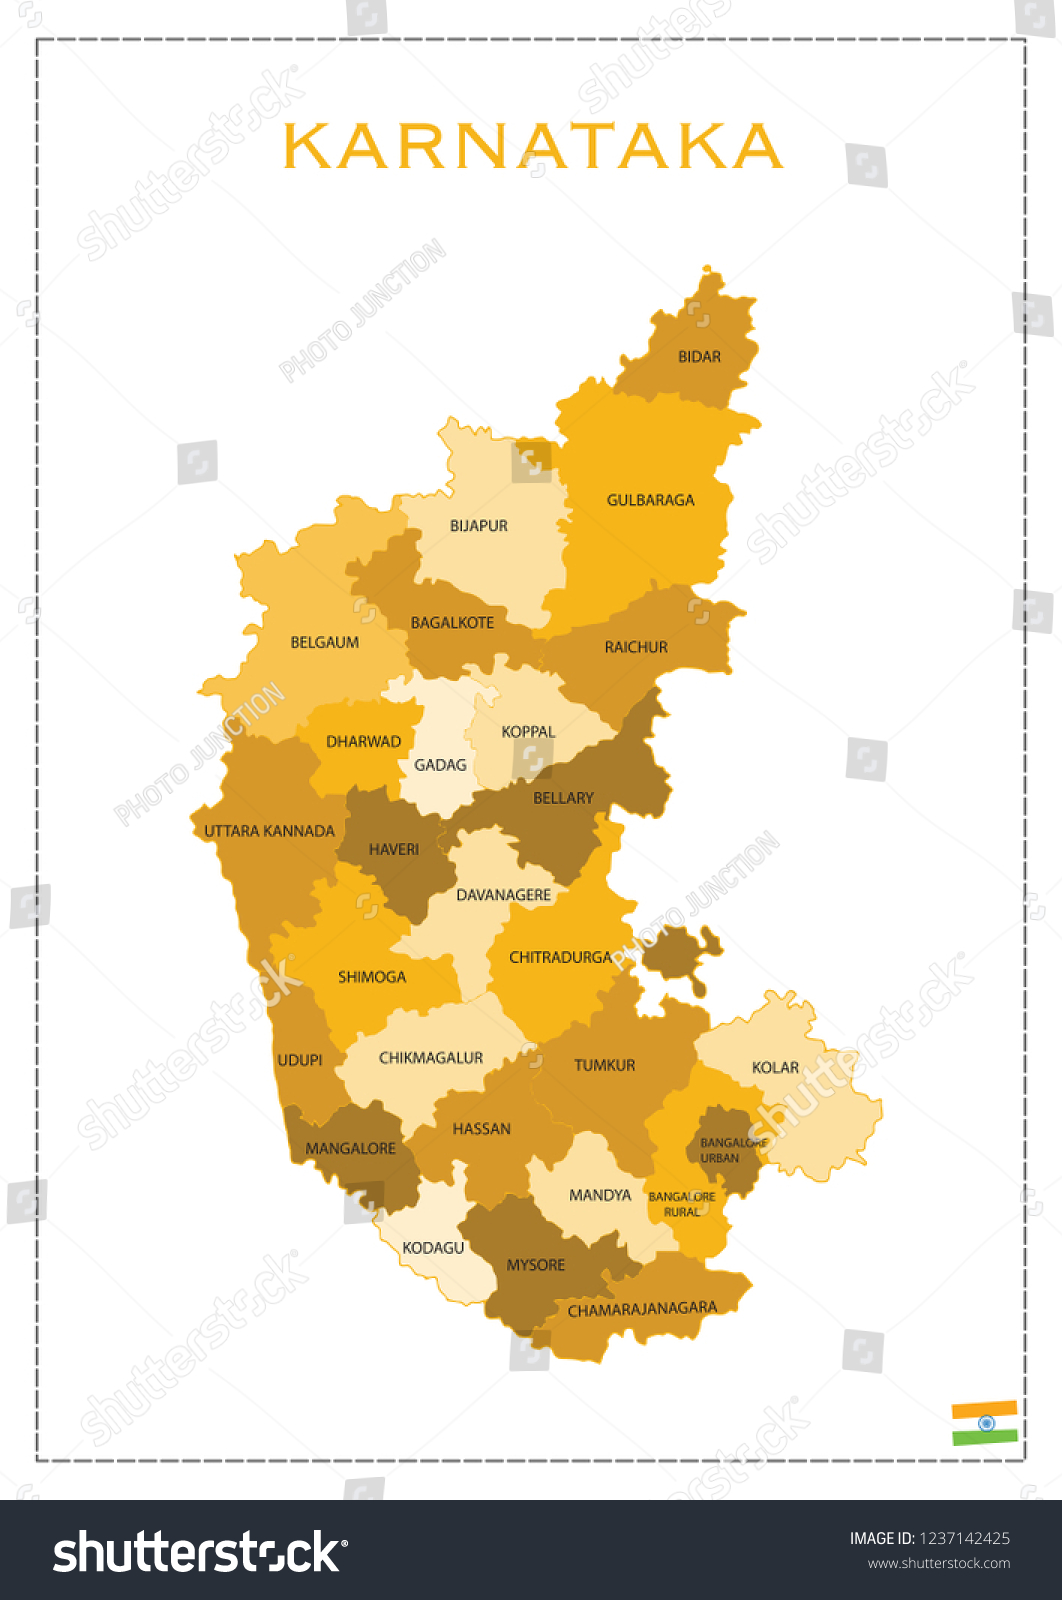 Karnataka Vector Map Stock Vector Royalty Free 1237142425